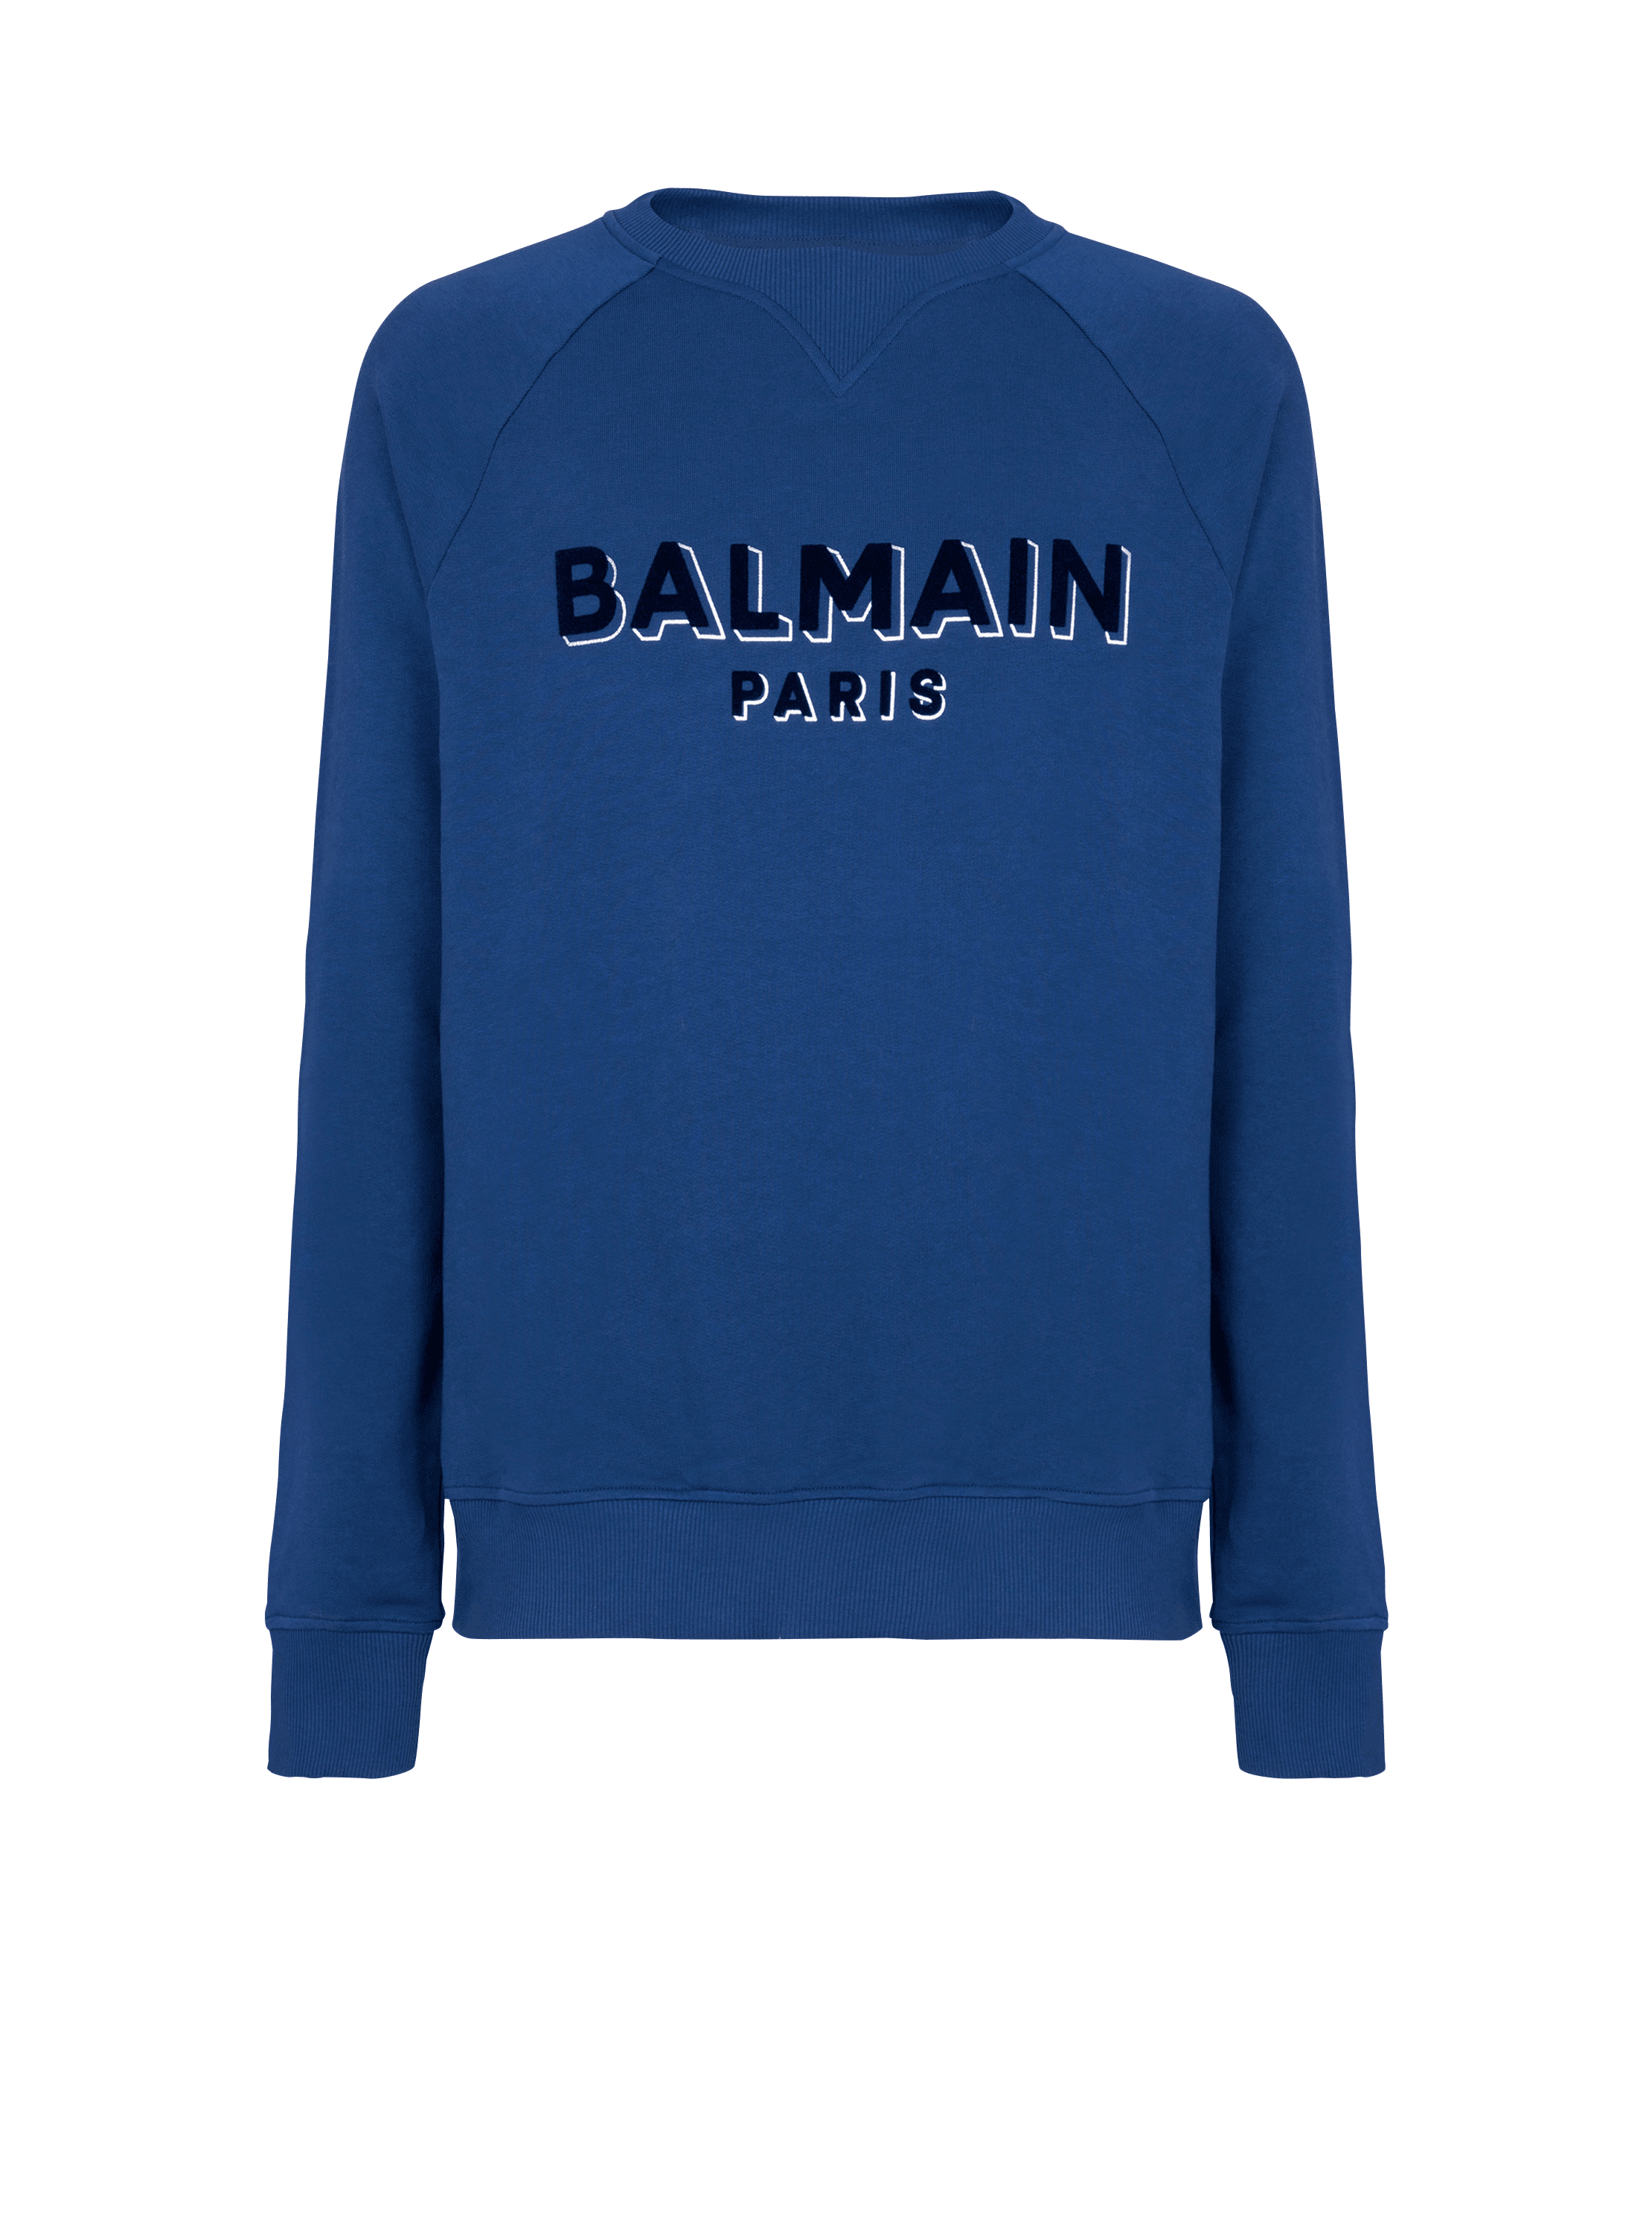 Sweat-shirt Balmain floqué métallisé, bleu marine, hi-res